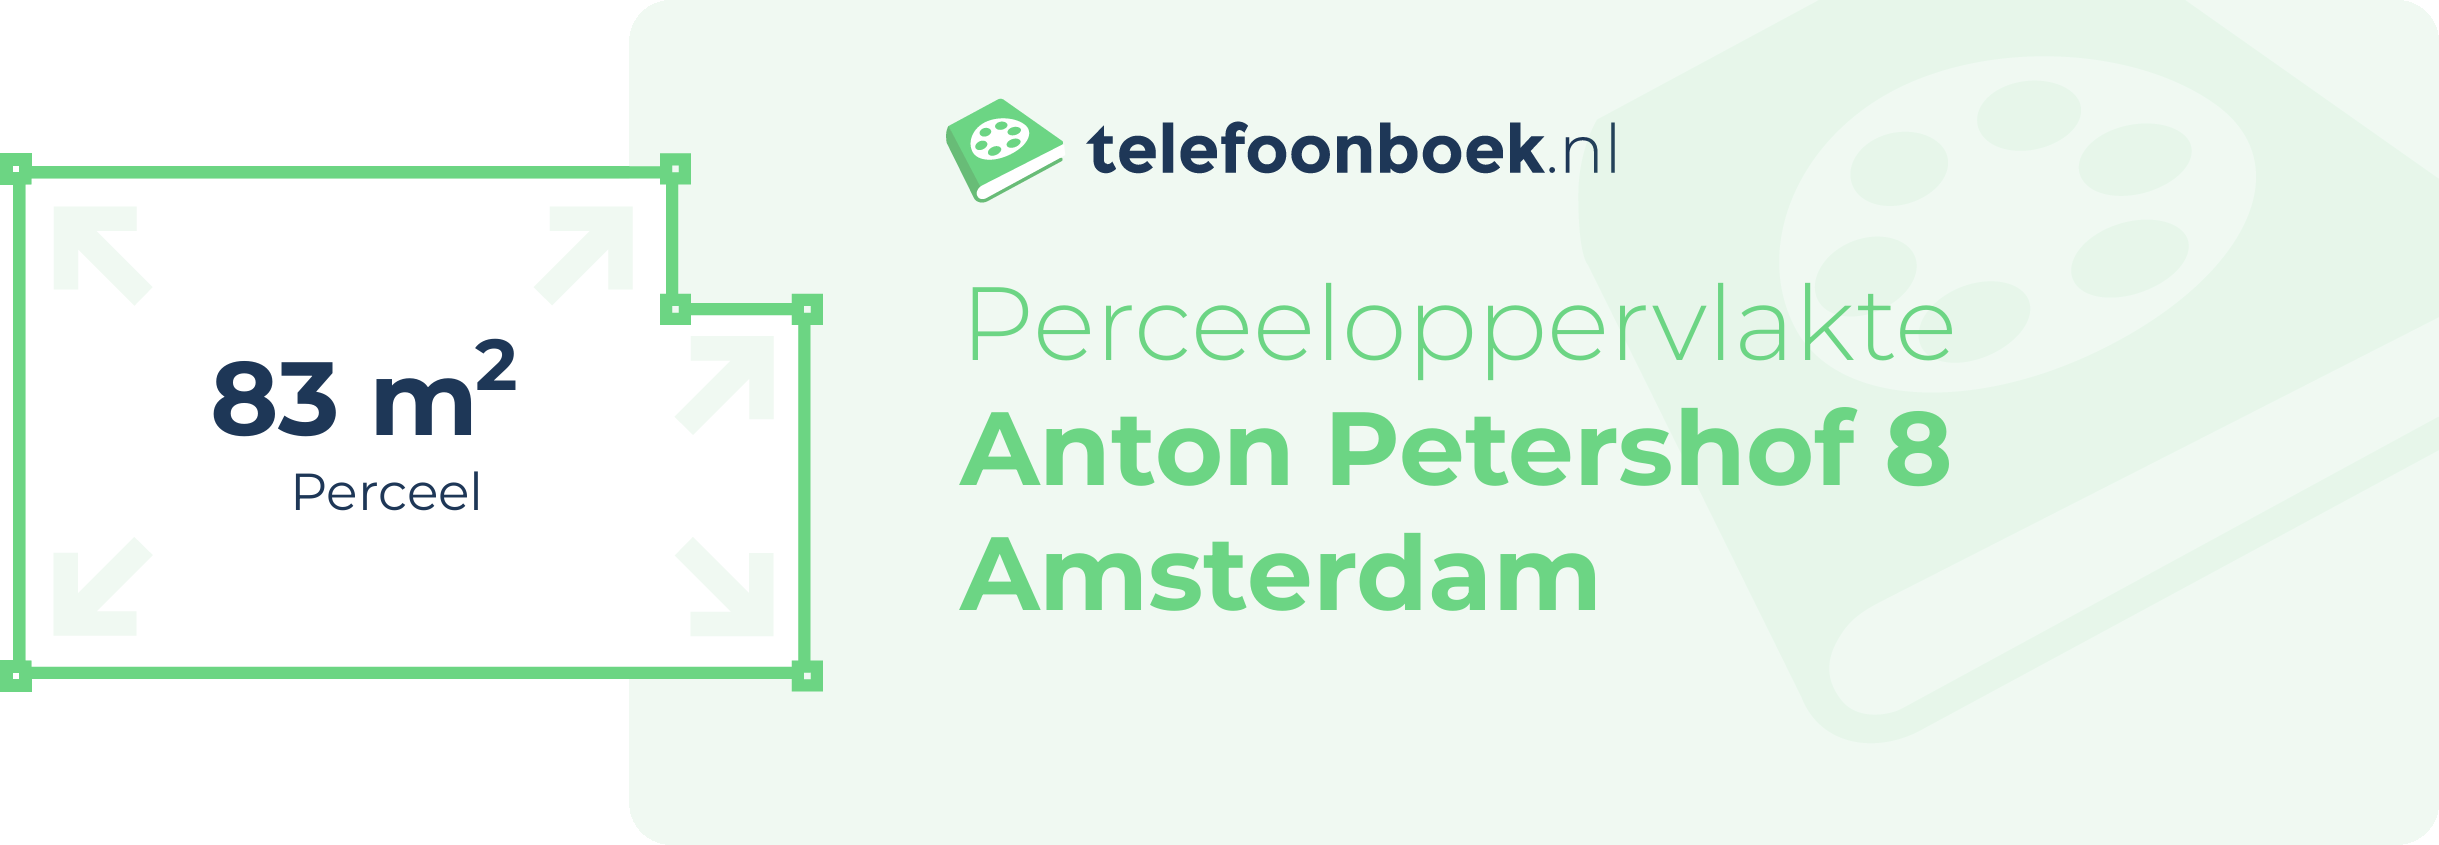 Perceeloppervlakte Anton Petershof 8 Amsterdam